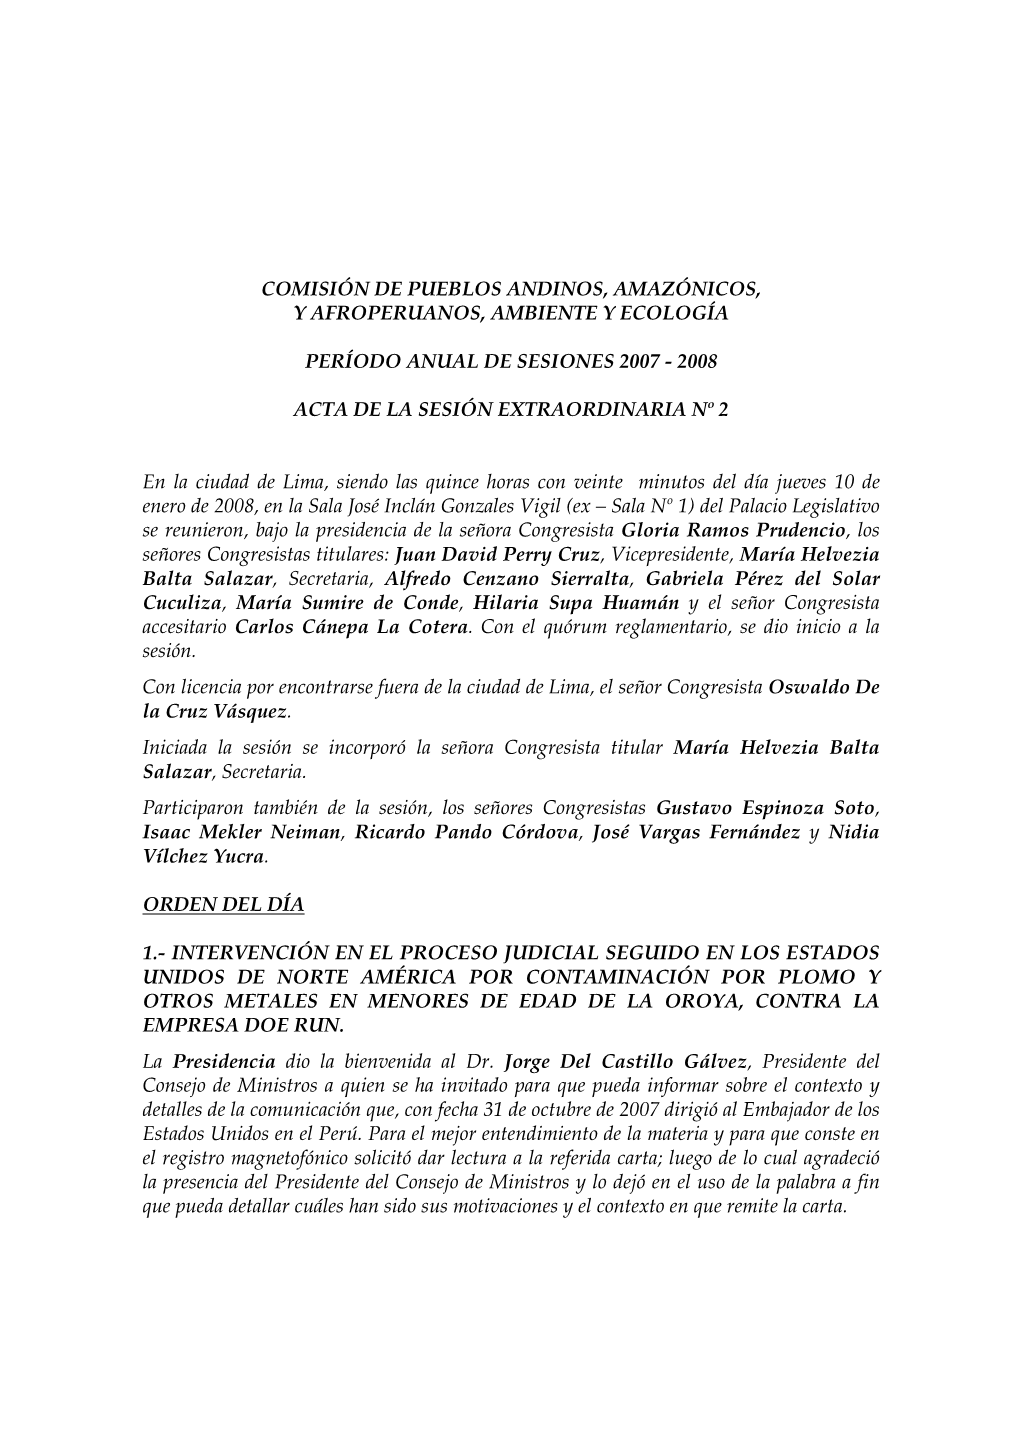 Comisión De Pueblos Andinos, Amazónicos, Y Afroperuanos, Ambiente Y Ecología